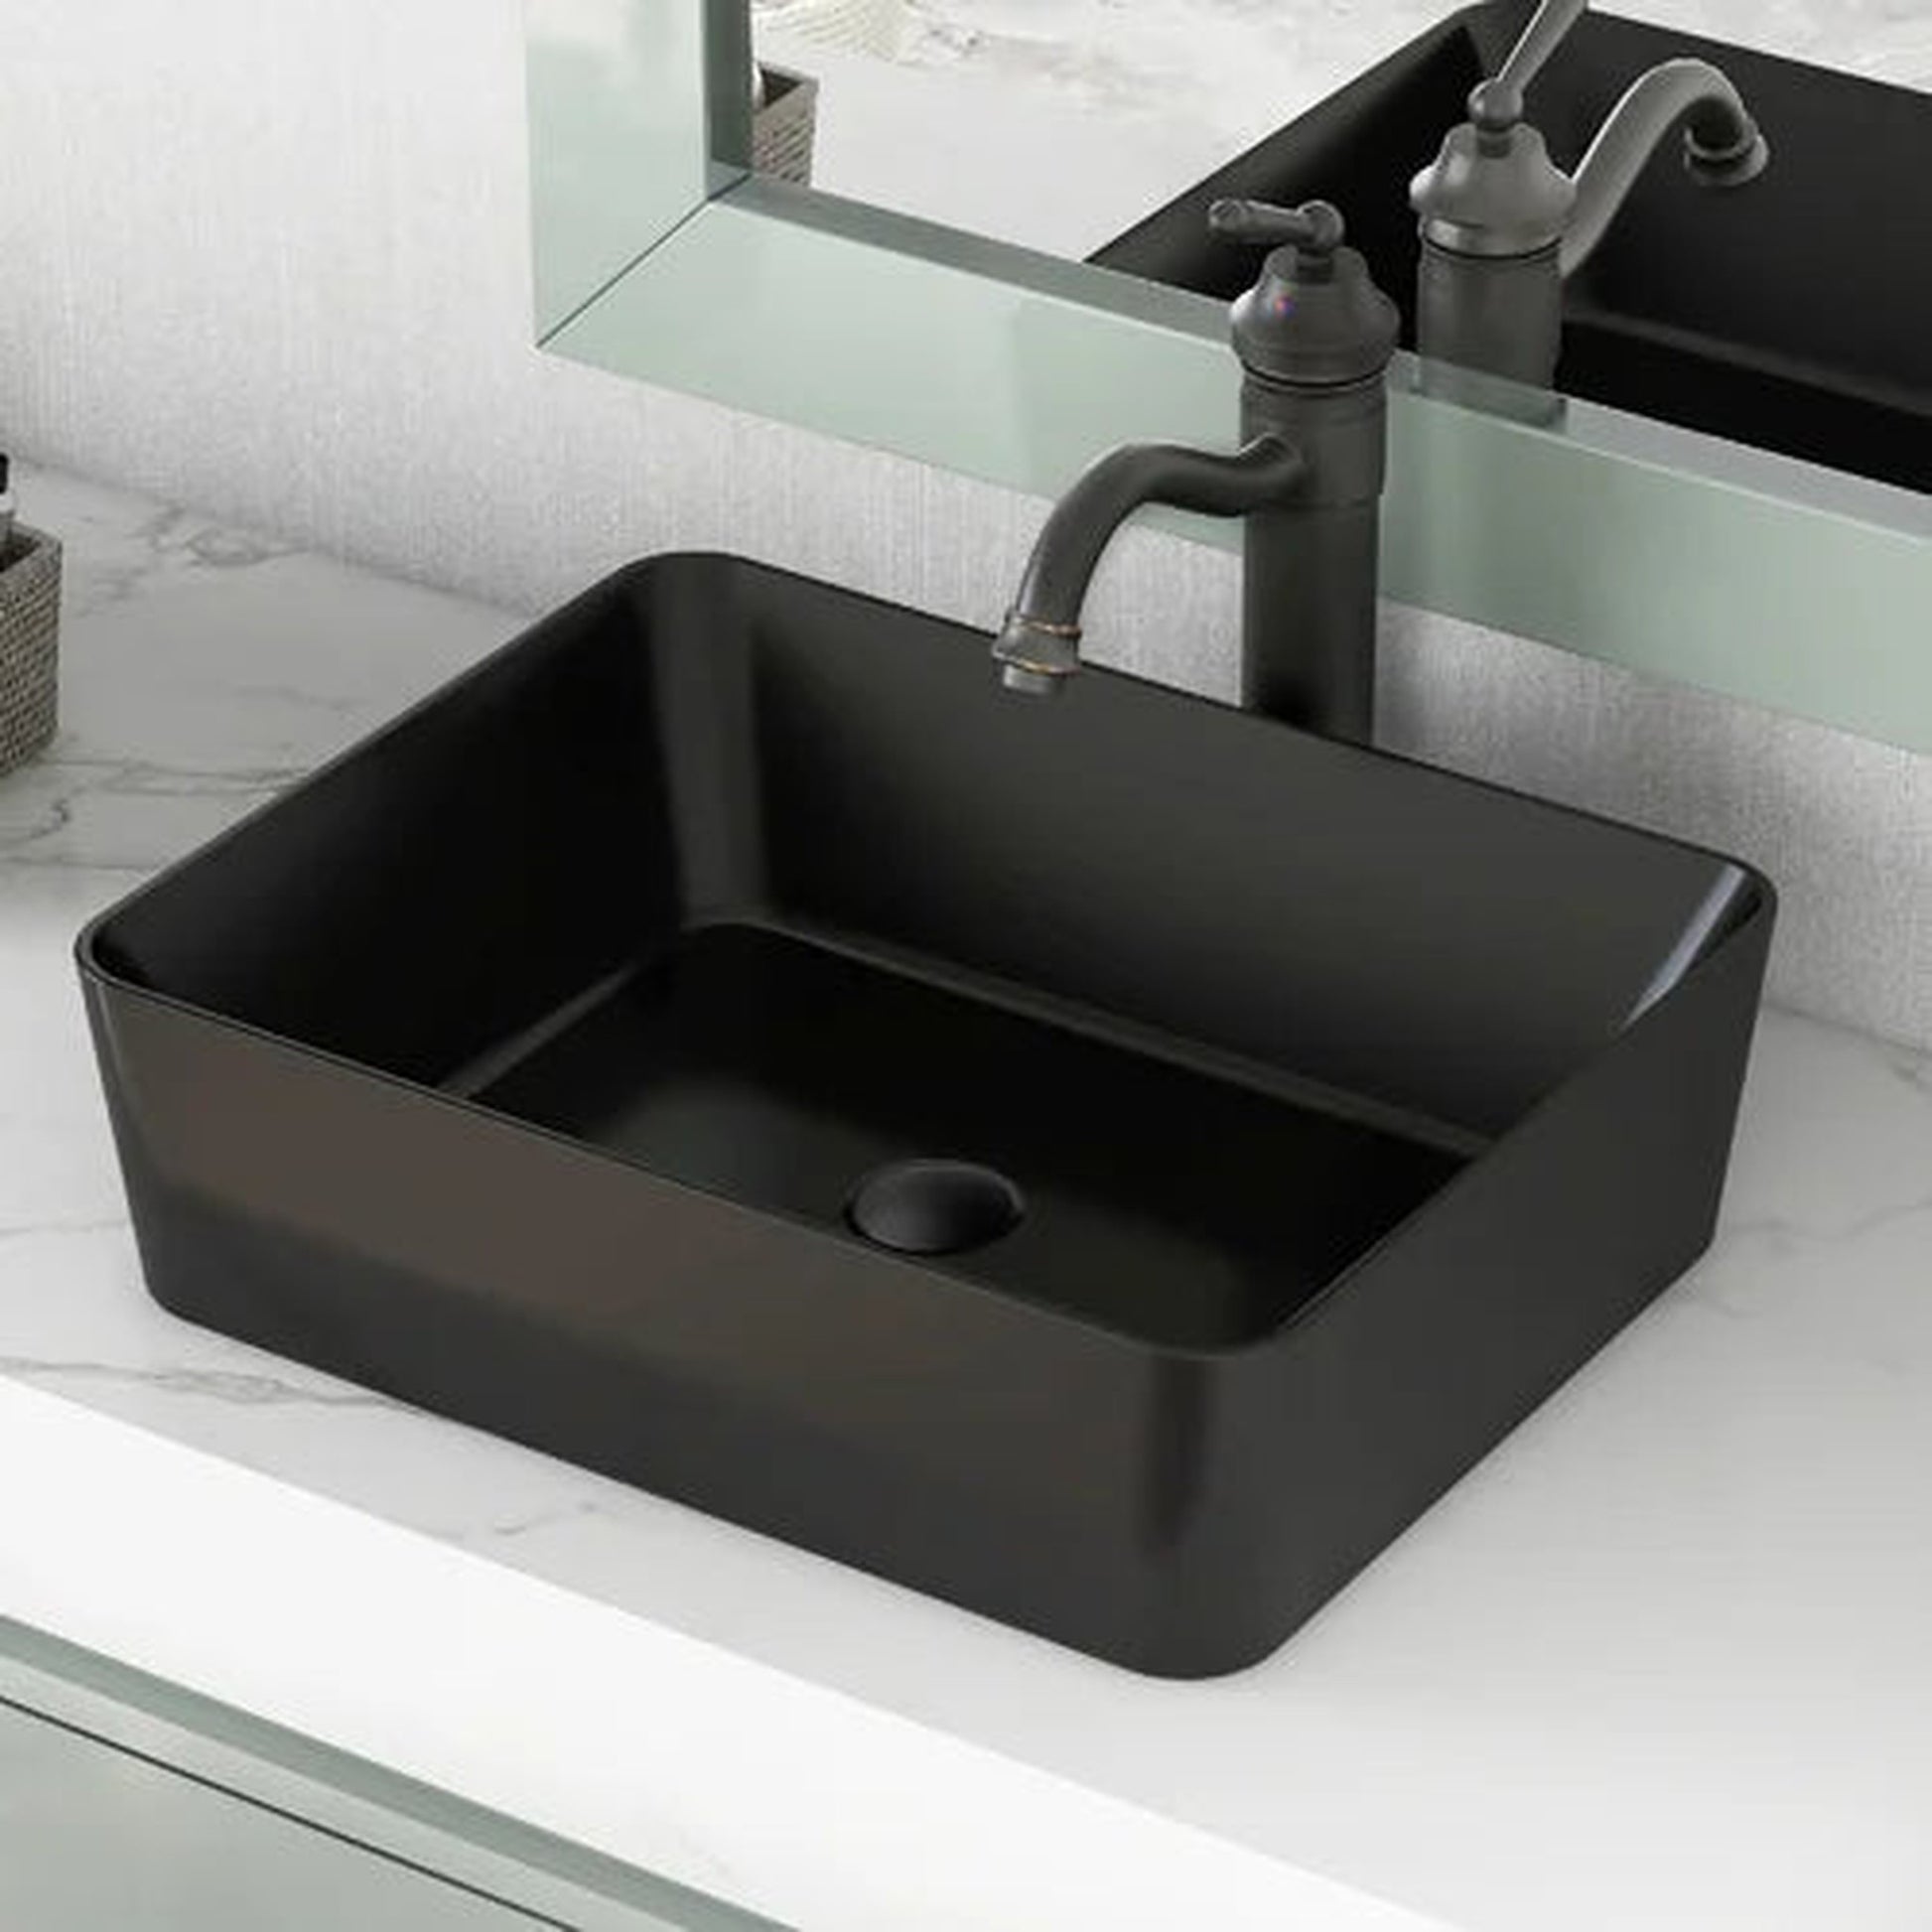 DeerValley Black Pop-Up Bathroom Sink Drain